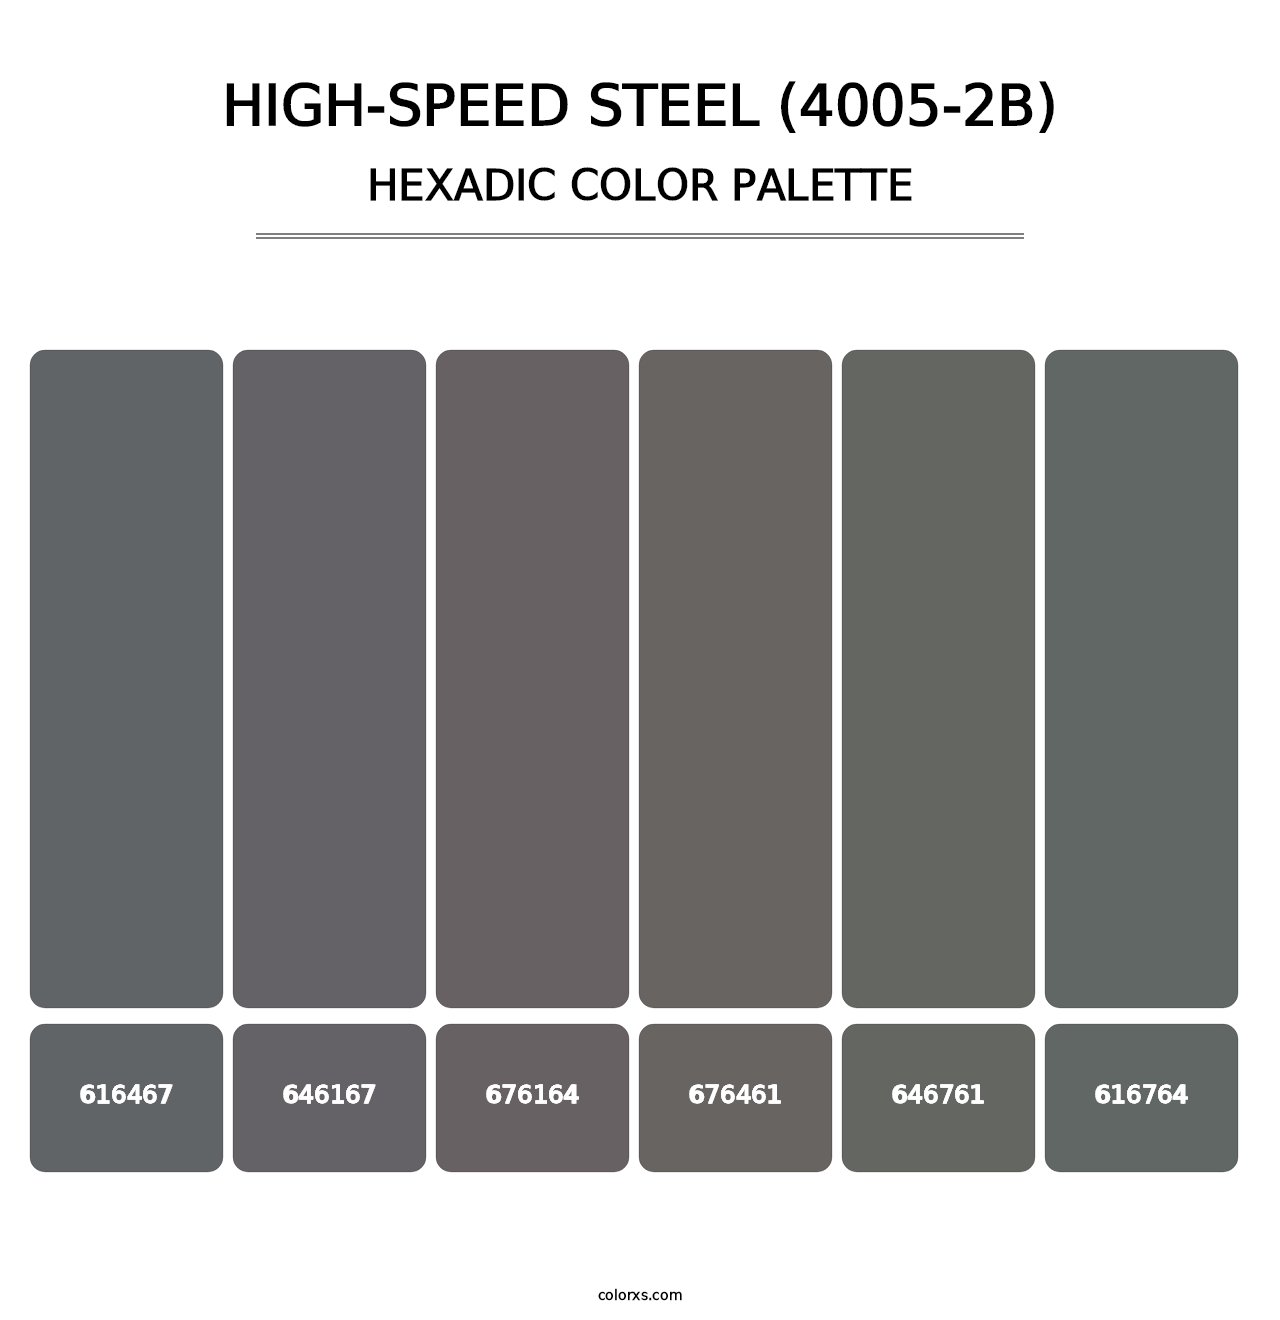 High-Speed Steel (4005-2B) - Hexadic Color Palette